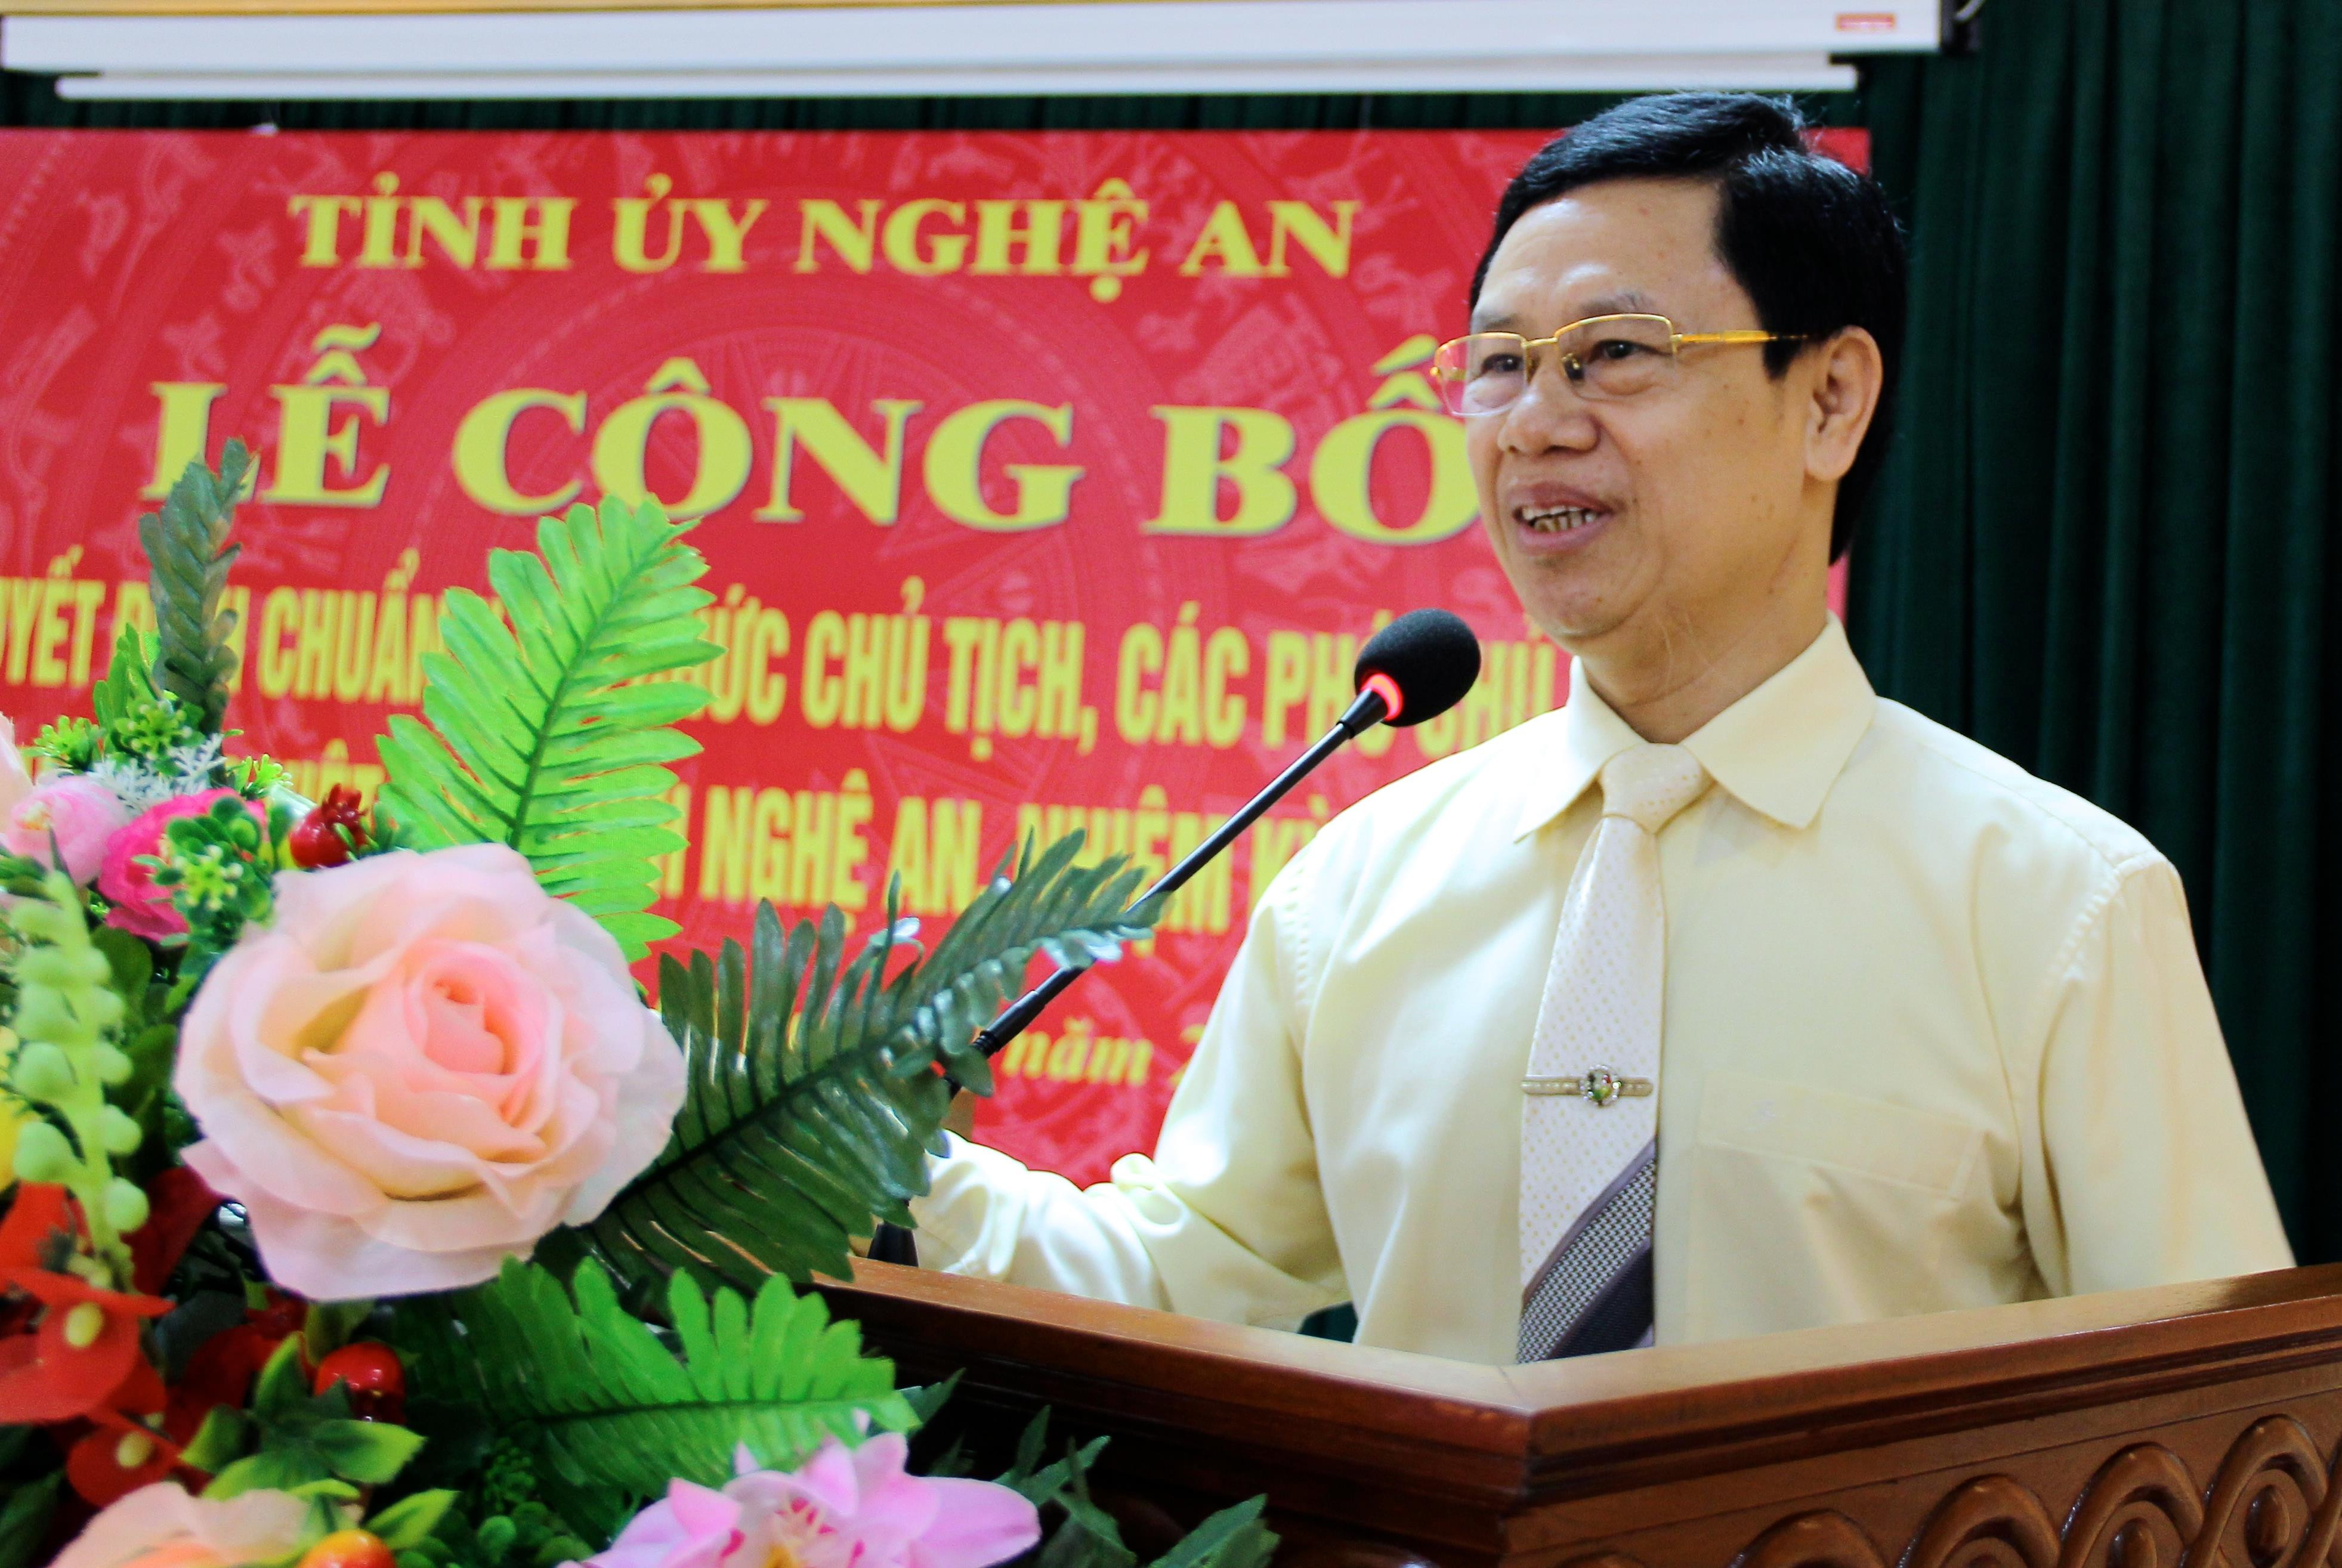 Phó Bí thư thường trực Tỉnh ủy Nguyễn Xuân Sơn phát biểu giao nhiệm vụ cho Ban Thường vụ Ủy ban MTTQ tỉnh nhiệm kỳ mới. Ảnh: Mỹ Nga 